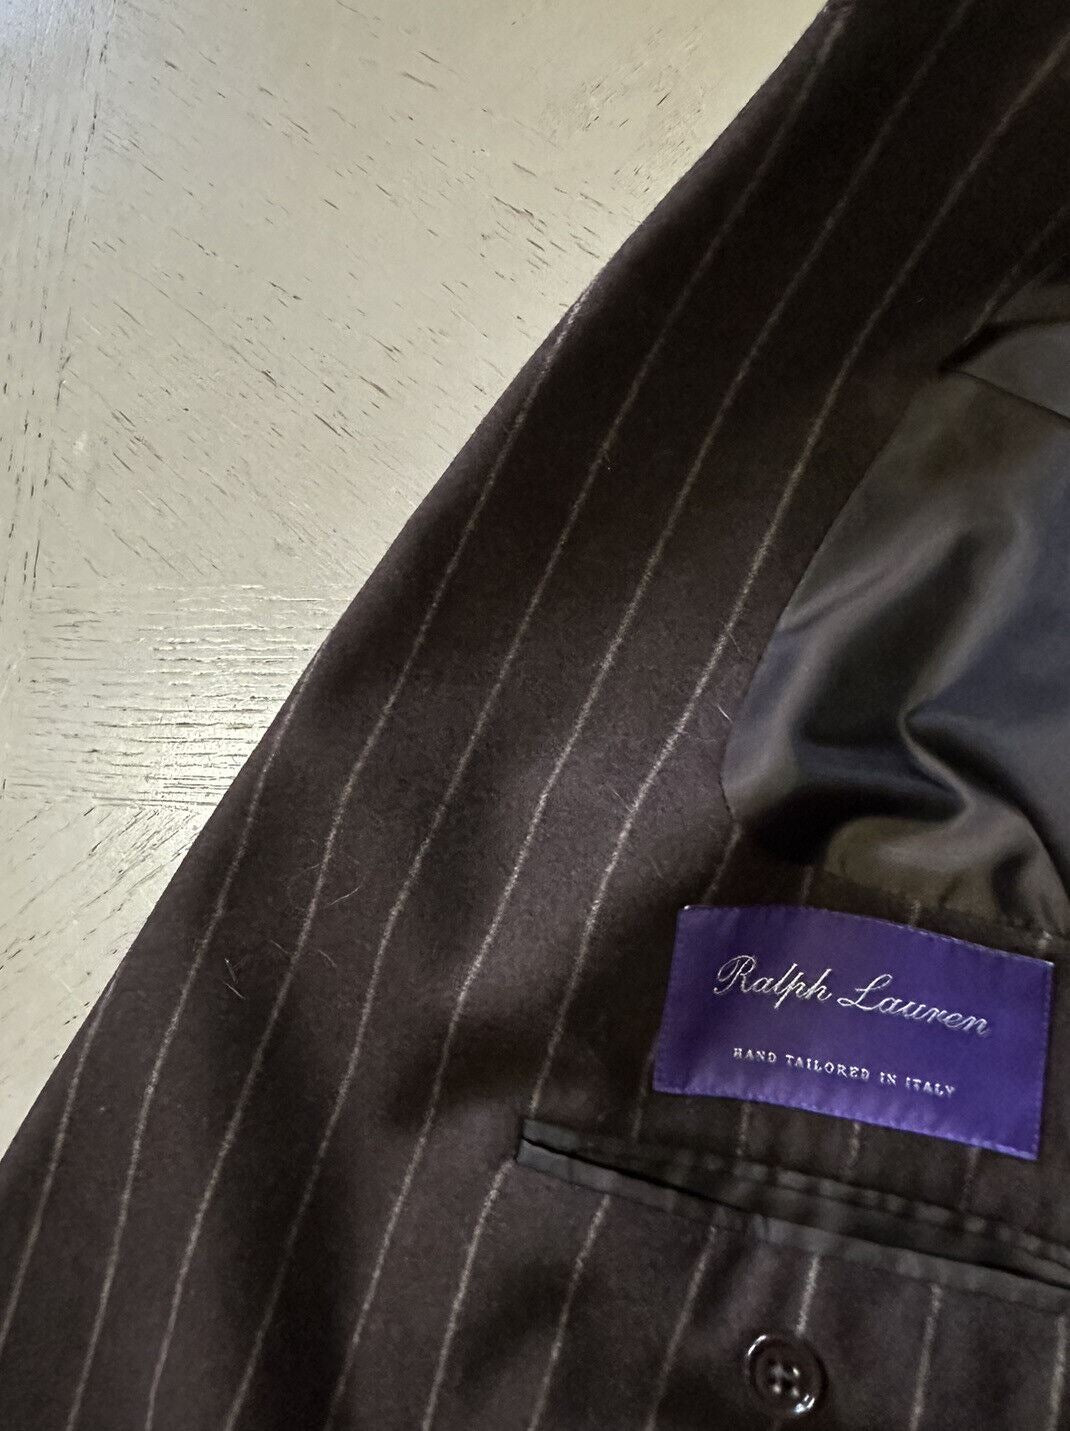 Новый мужской двубортный костюм Ralph Lauren Purple Label стоимостью 4995 долларов, коричневый 46L США/56L ЕС